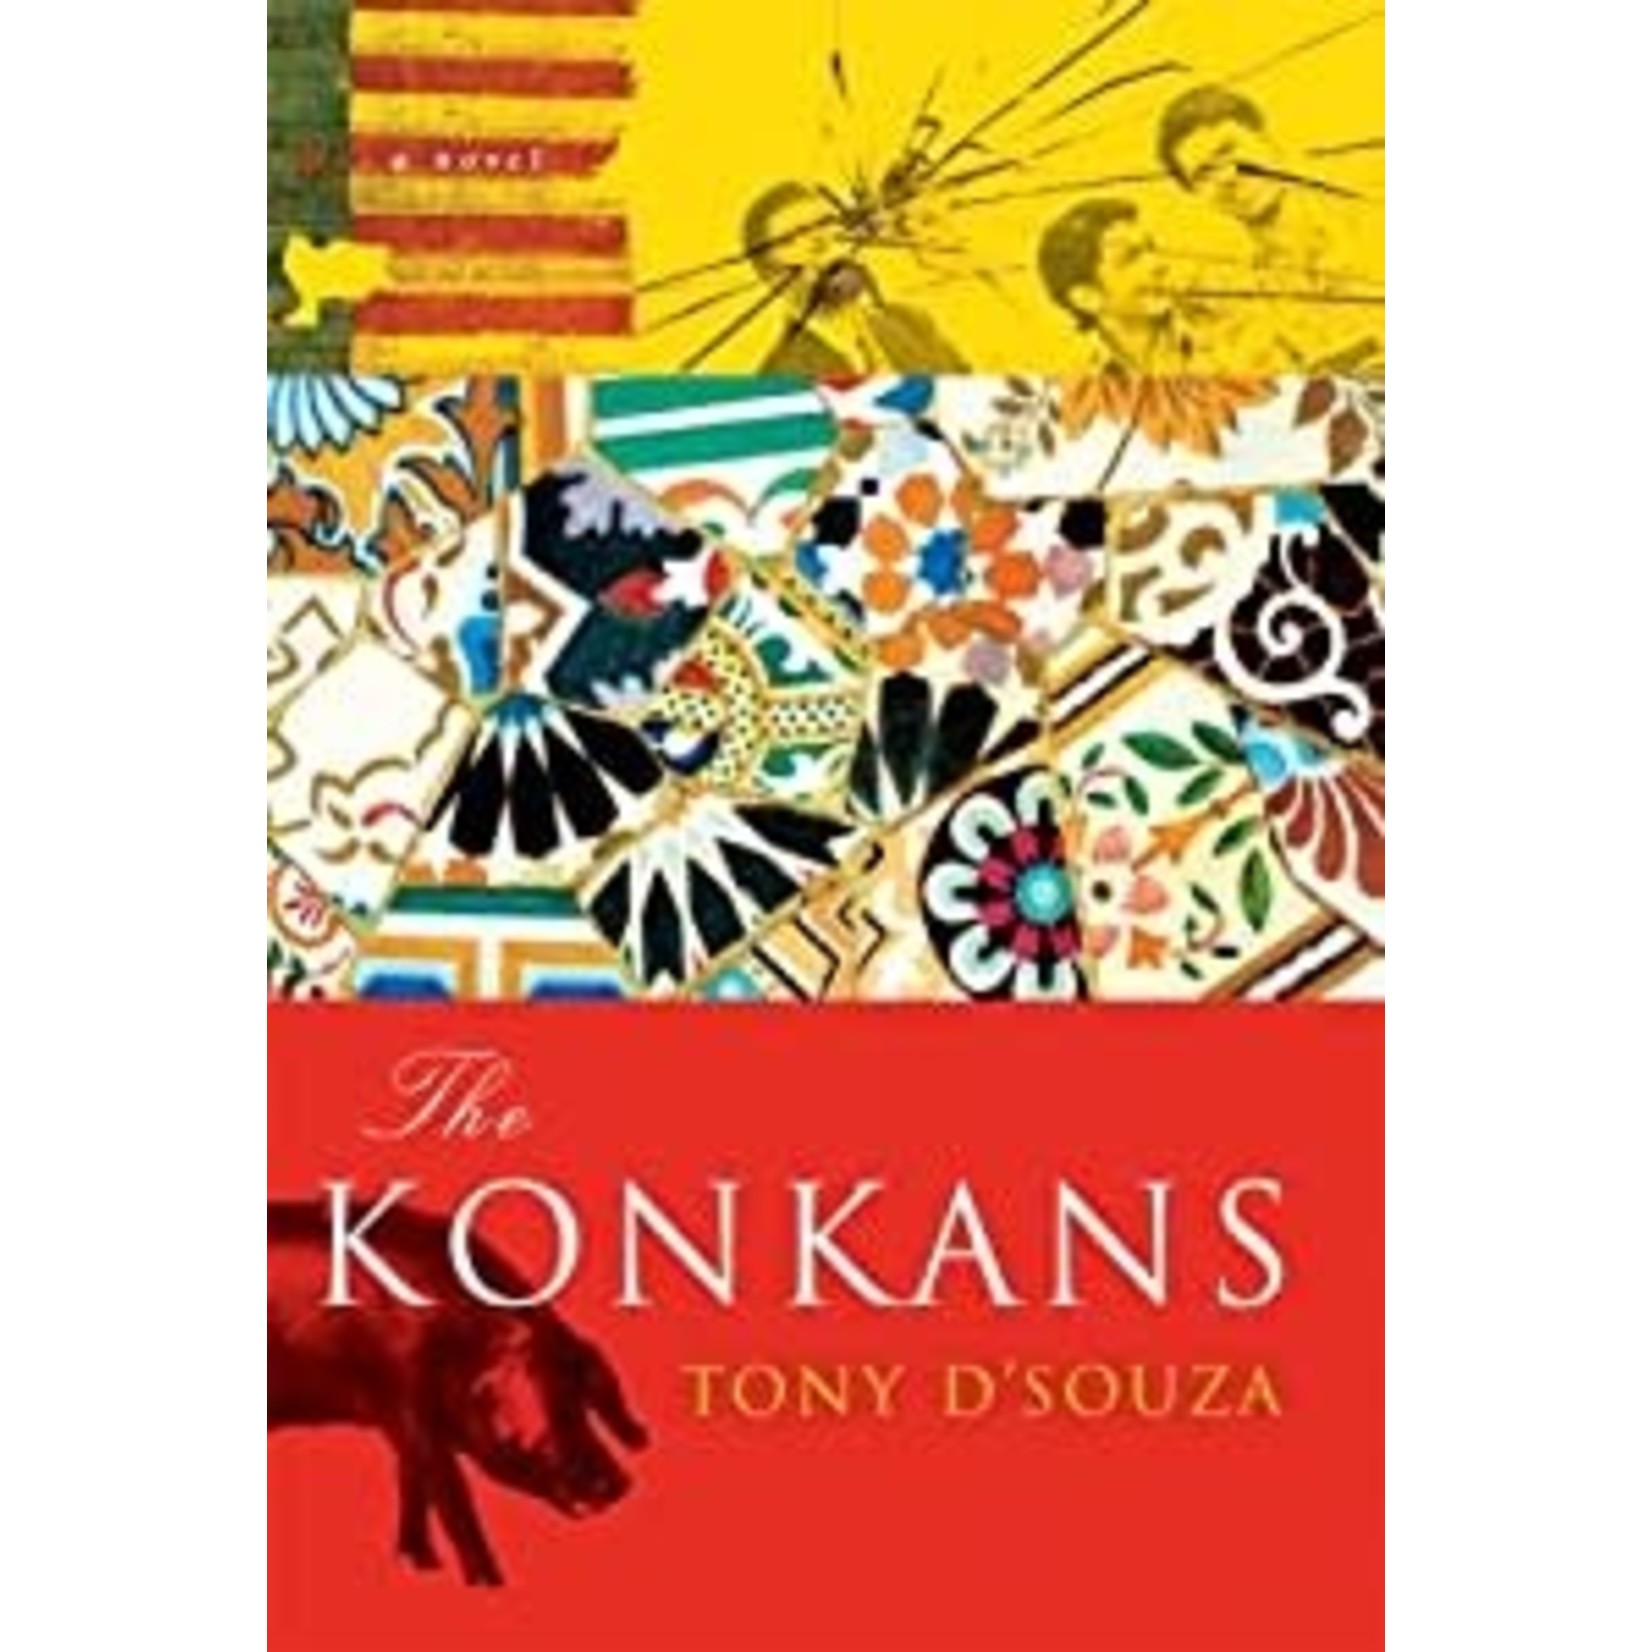 D'Souza, Tony D'Souza, Tony - The Konkans (HC 1st Edition)